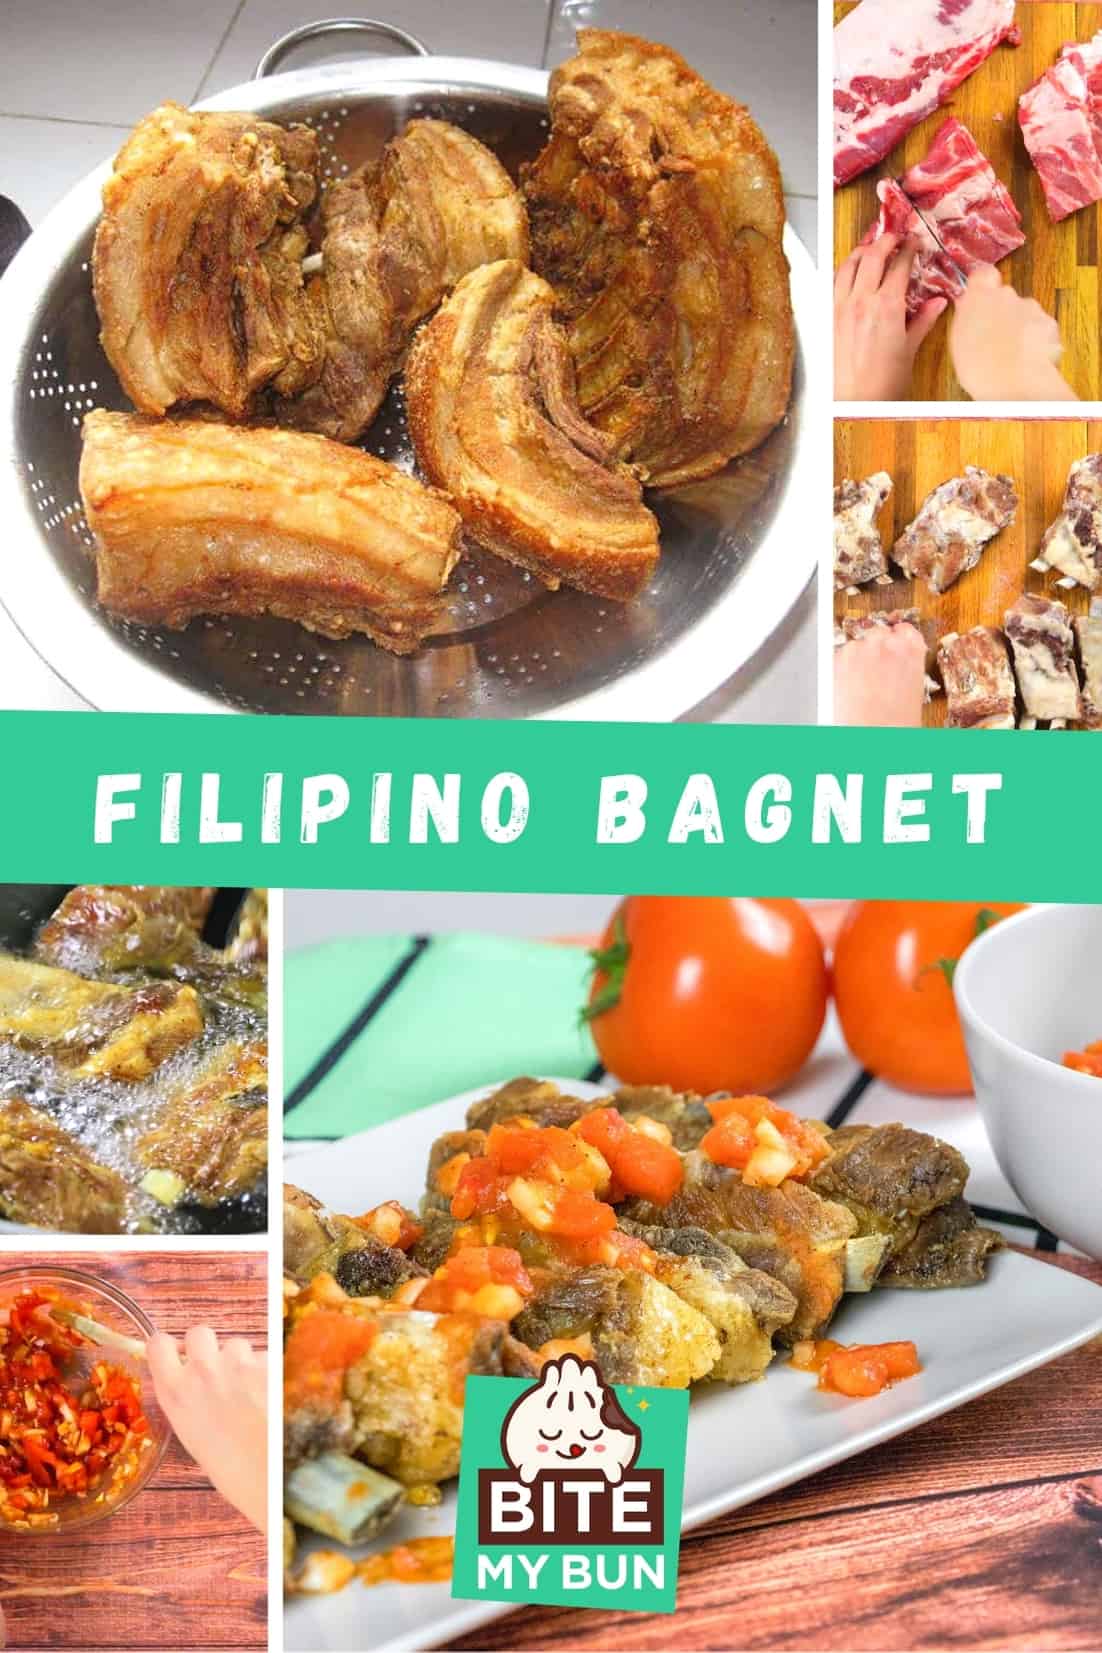 Bagnet filipino crocante com molho bagoong alamang